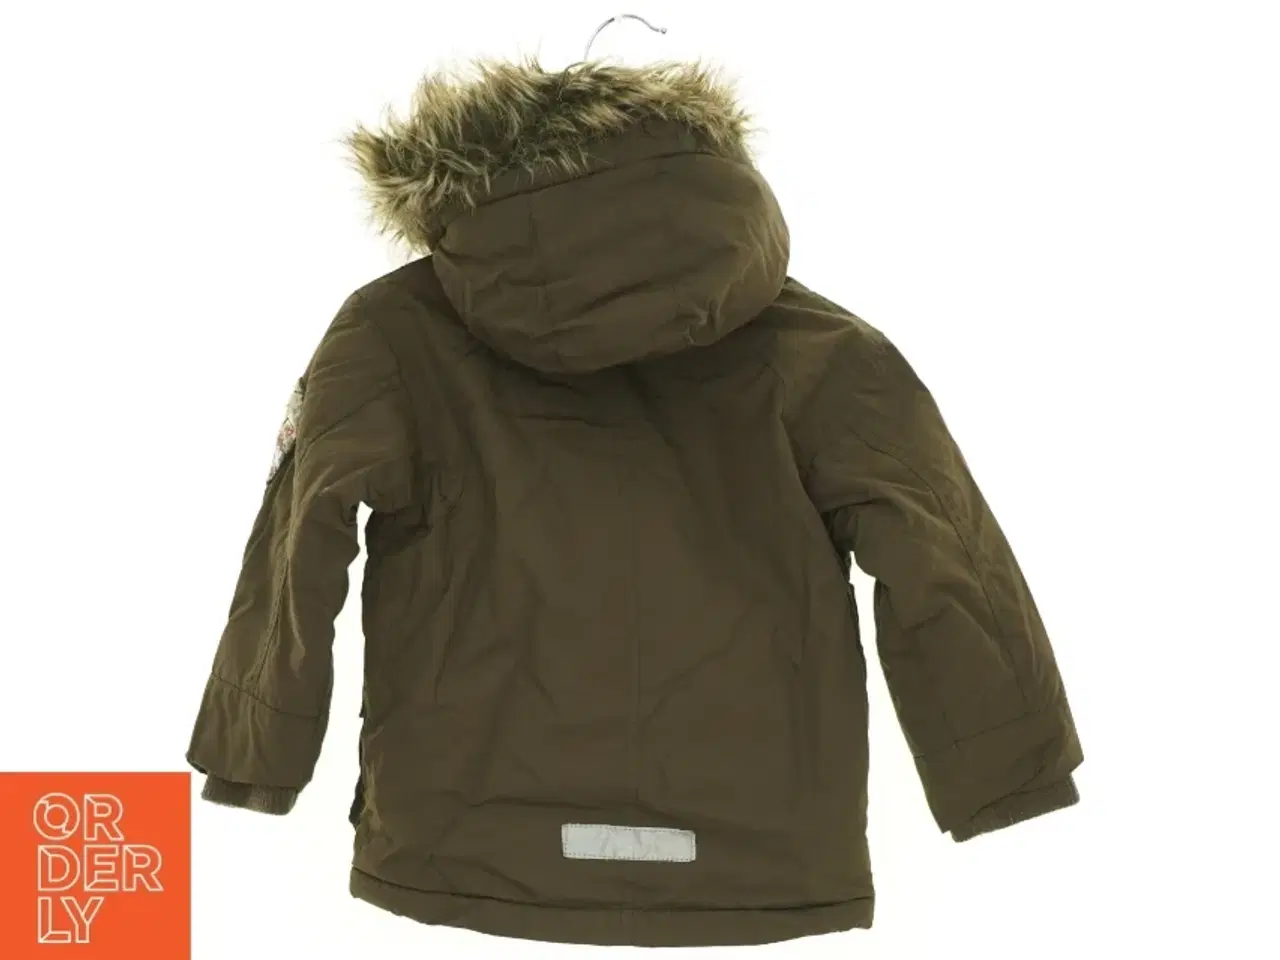 Billede 2 - Varm Parka jakke med aftagelig hætte og pelskant (str. 86 cm)